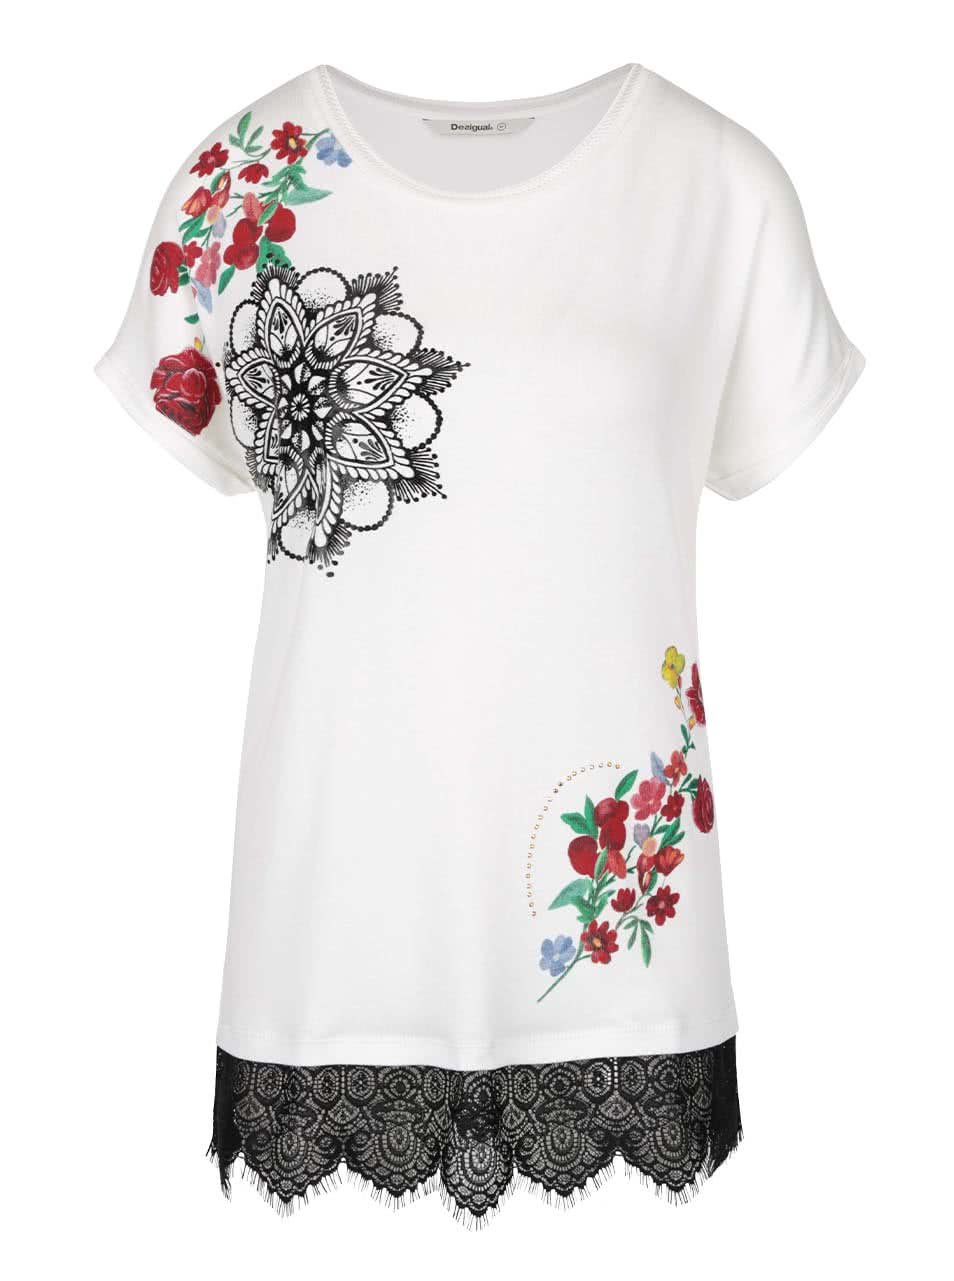 Krémové tričko s potiskem květin Desigual Oporto